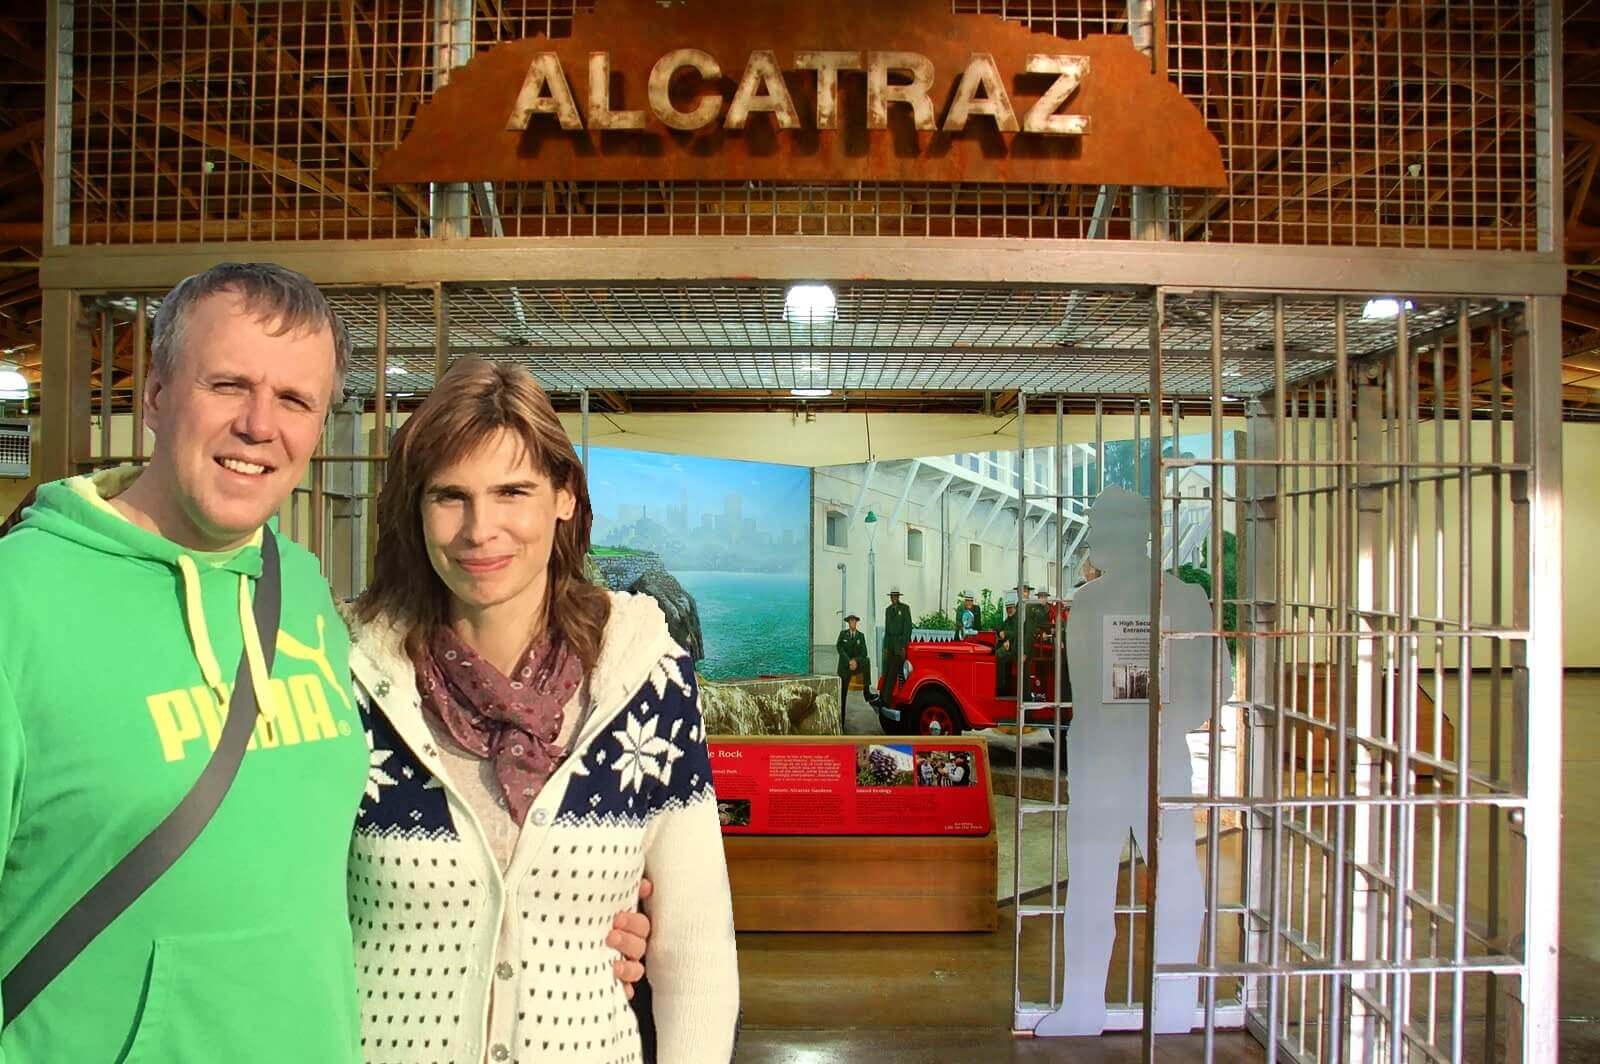 alcatraz-island-tickets-prison-tours-guide ()